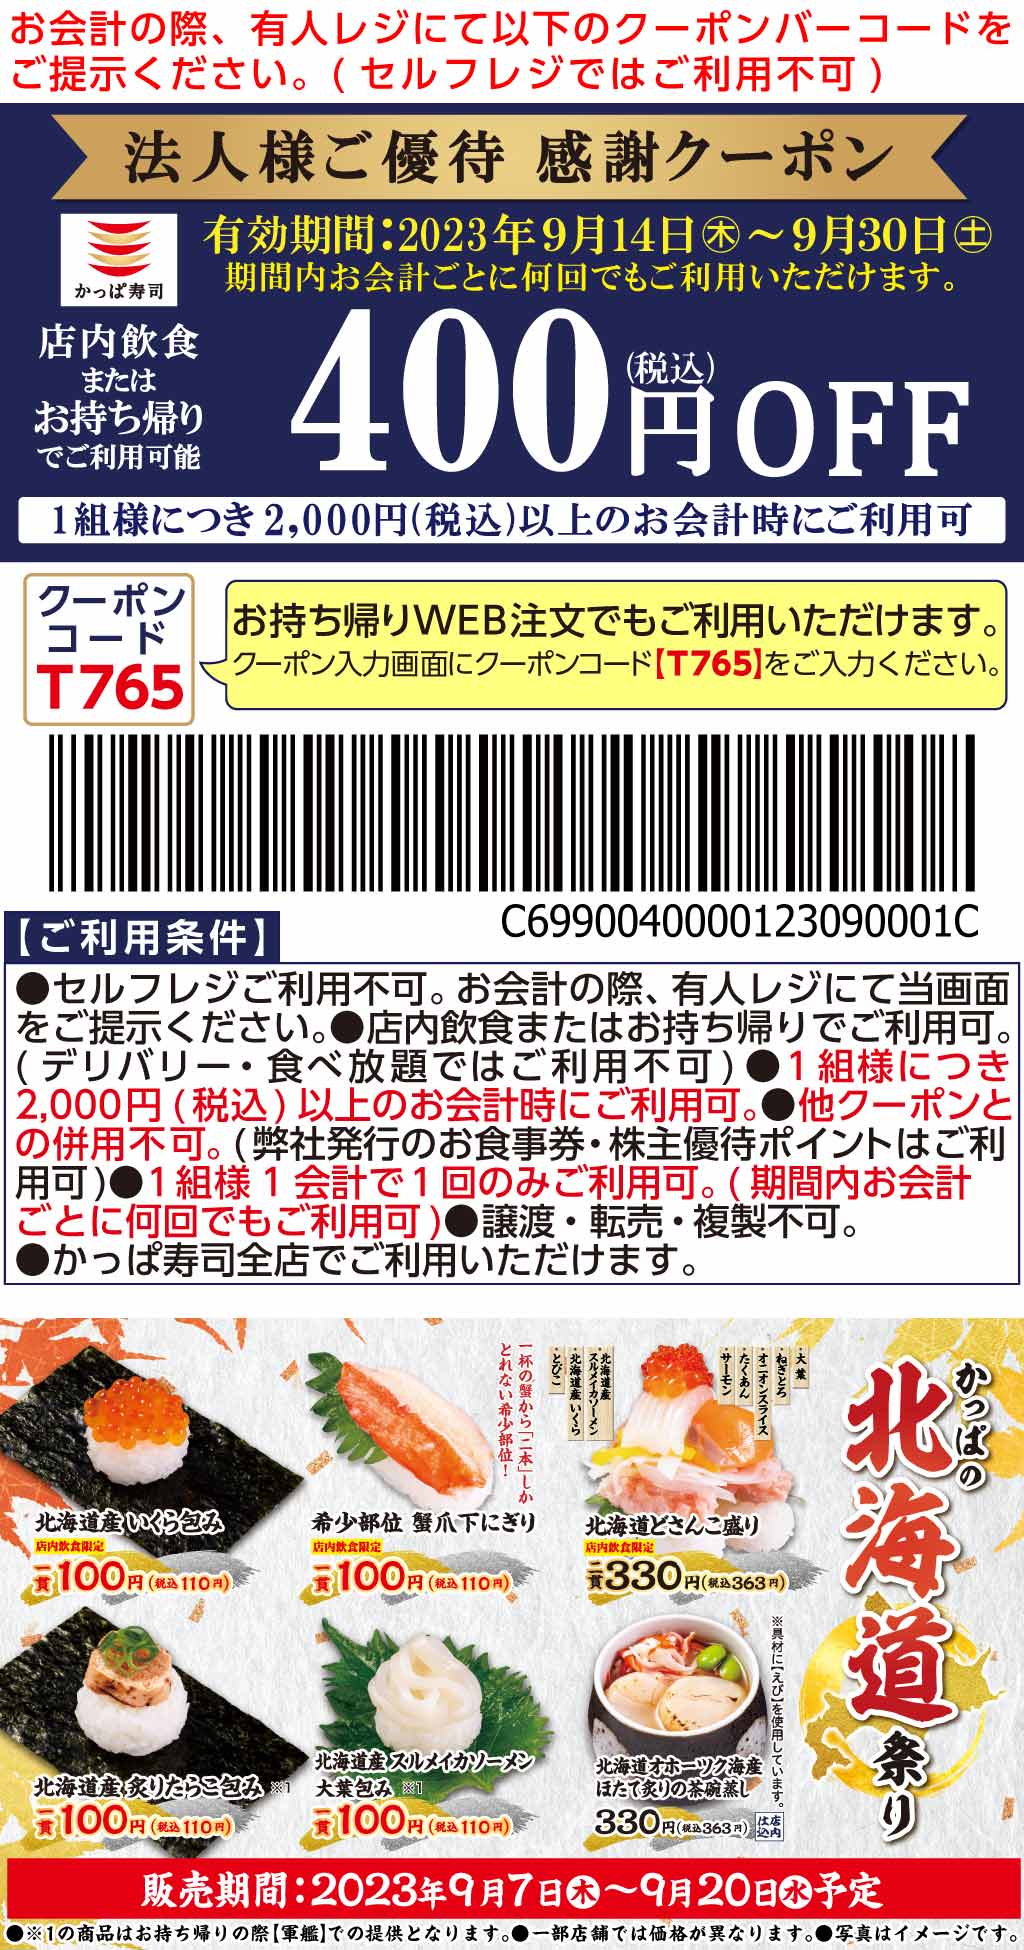 かっぱ寿司 クーポン - 割引券